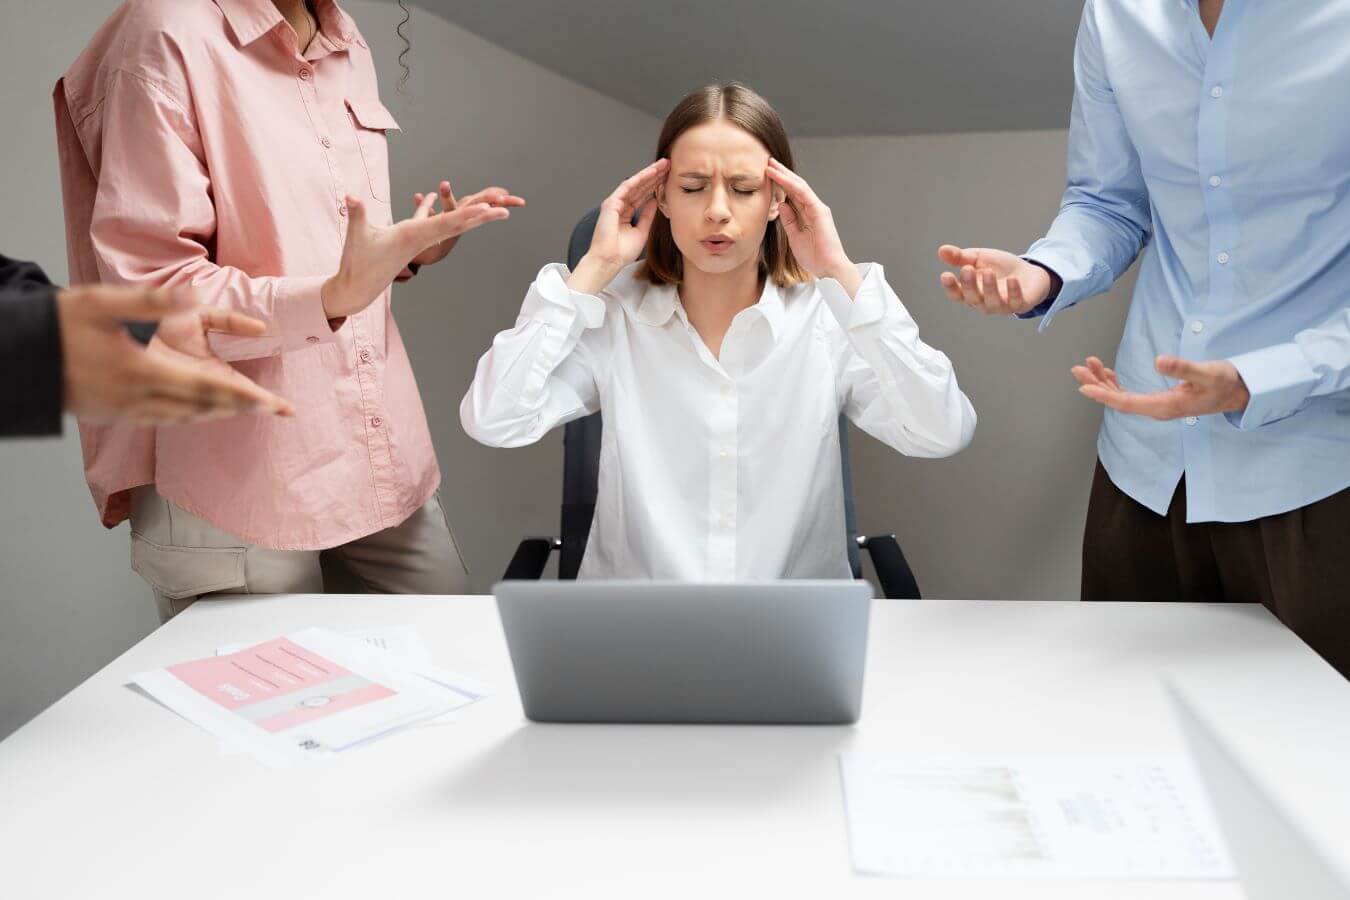 Попробовать справиться. Помощь между коллегами. Violent workplace Conflicts. Медиация фото PNG. Annoying Habits of your colleagues.